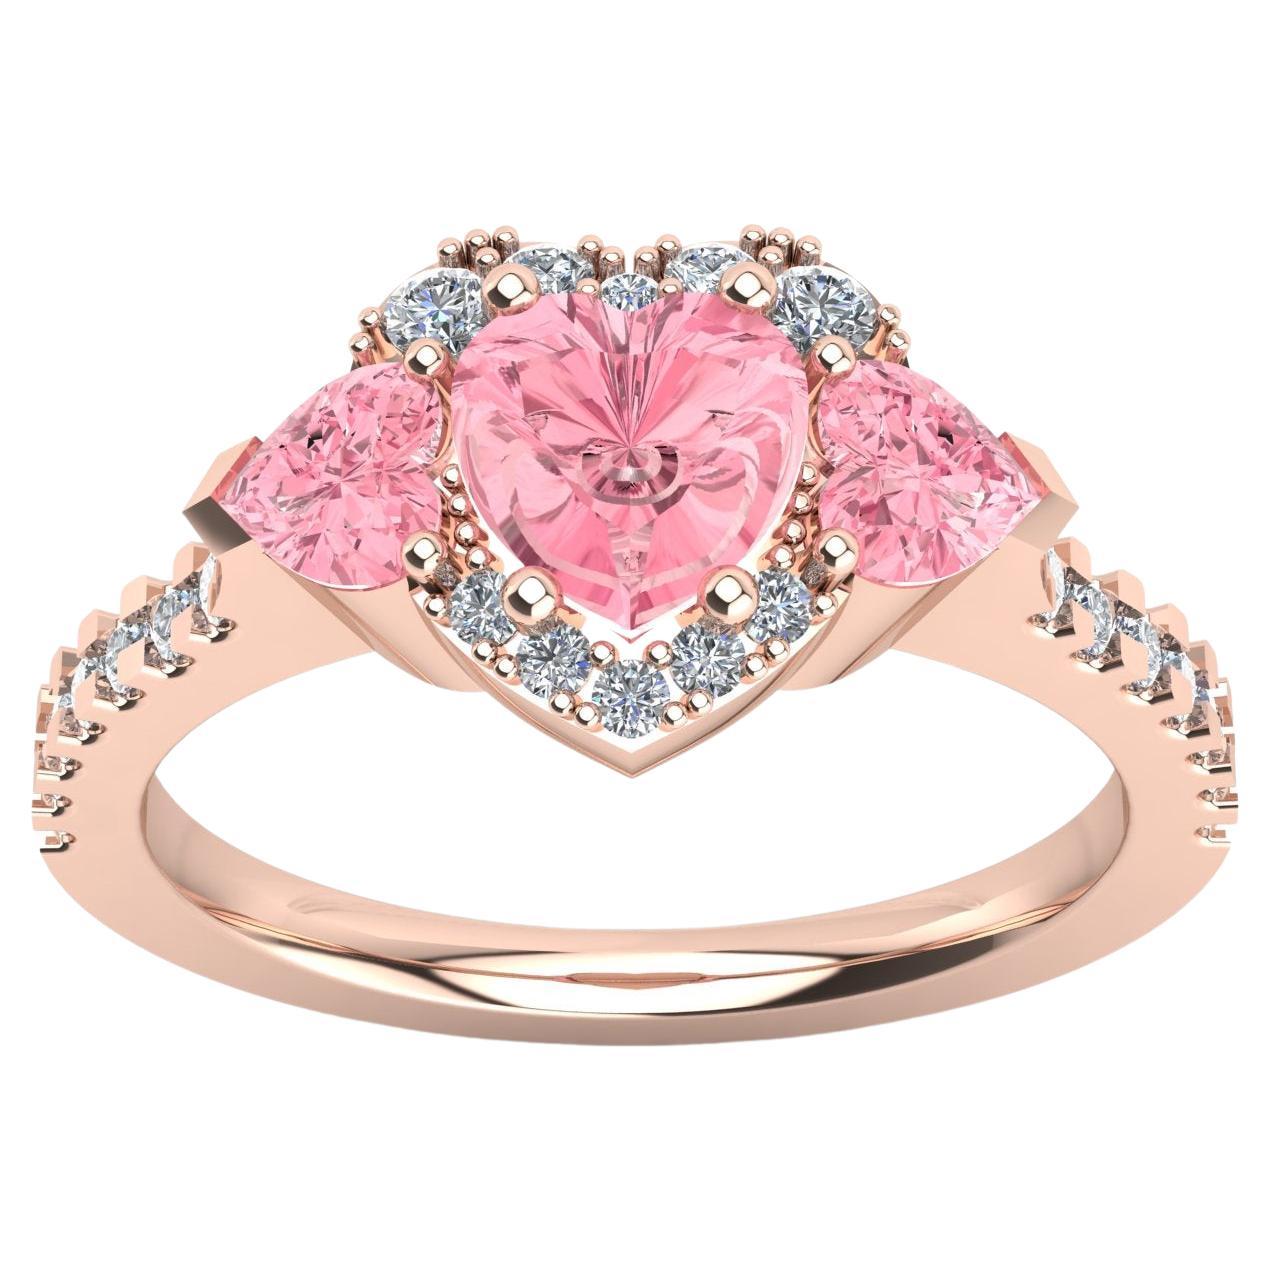 Bague en forme de cœur avec saphirs roses et diamants - or rose 18 carats - fabriquée en Italie